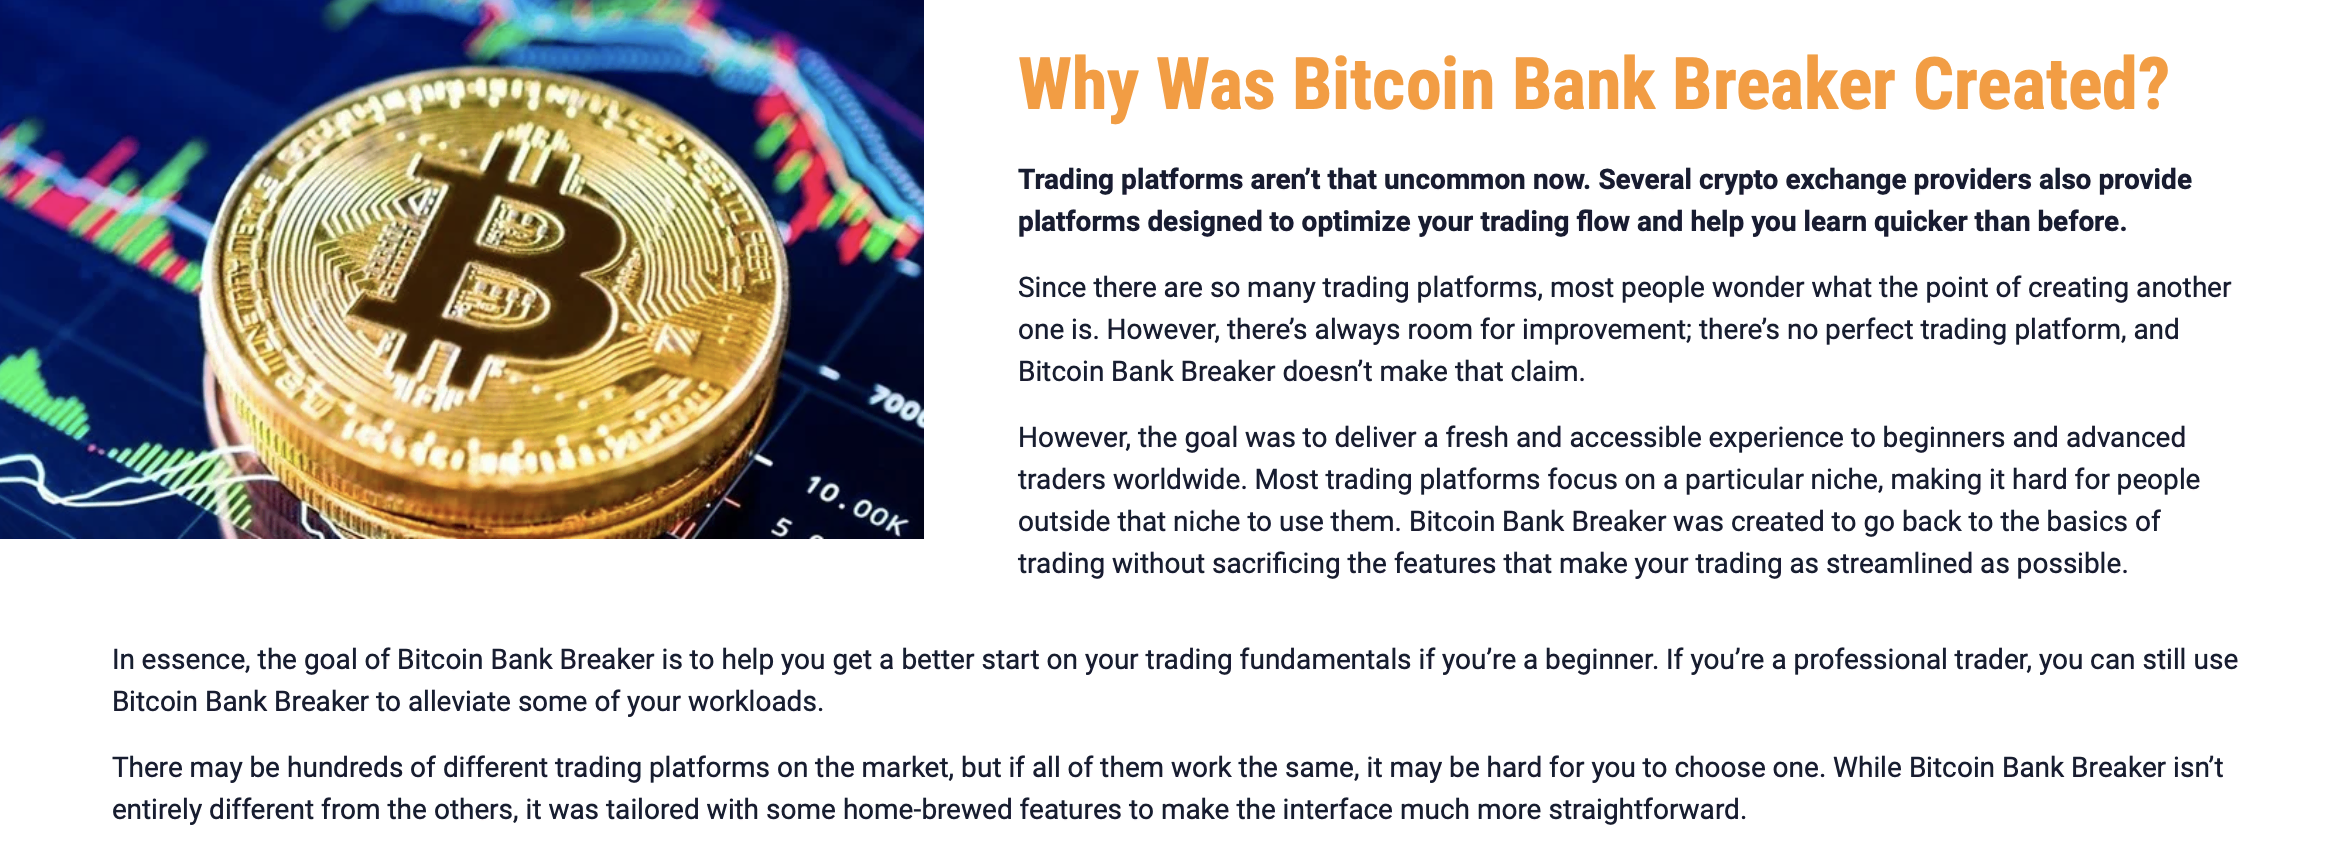 Mengapa Bitcoin Bank Breaker dicipta